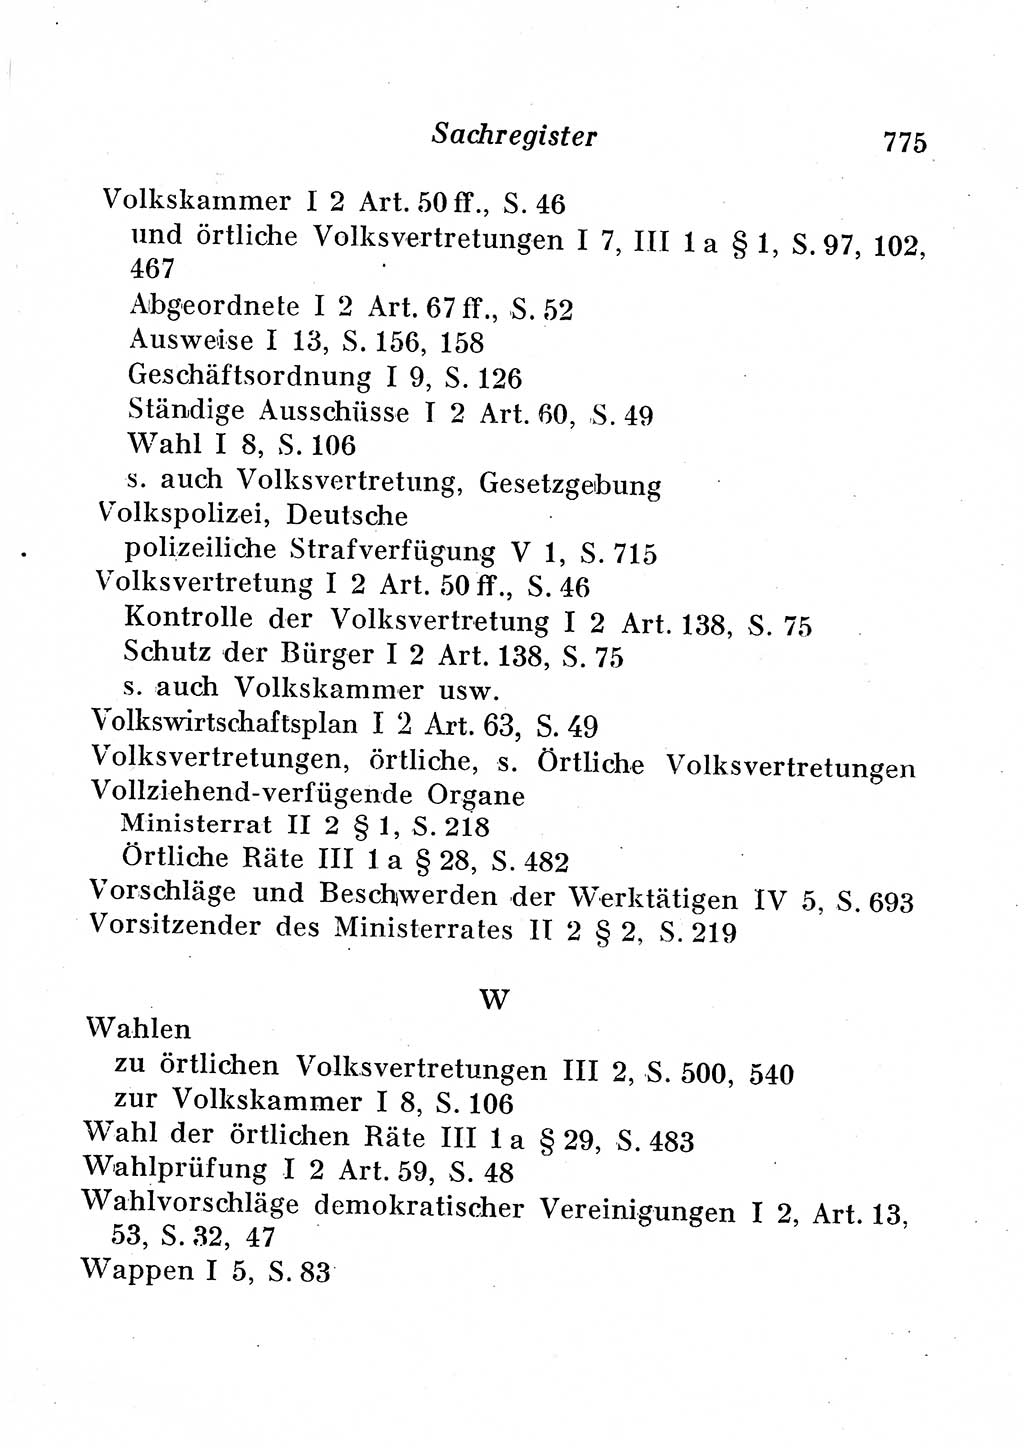 Staats- und verwaltungsrechtliche Gesetze der Deutschen Demokratischen Republik (DDR) 1958, Seite 775 (StVerwR Ges. DDR 1958, S. 775)